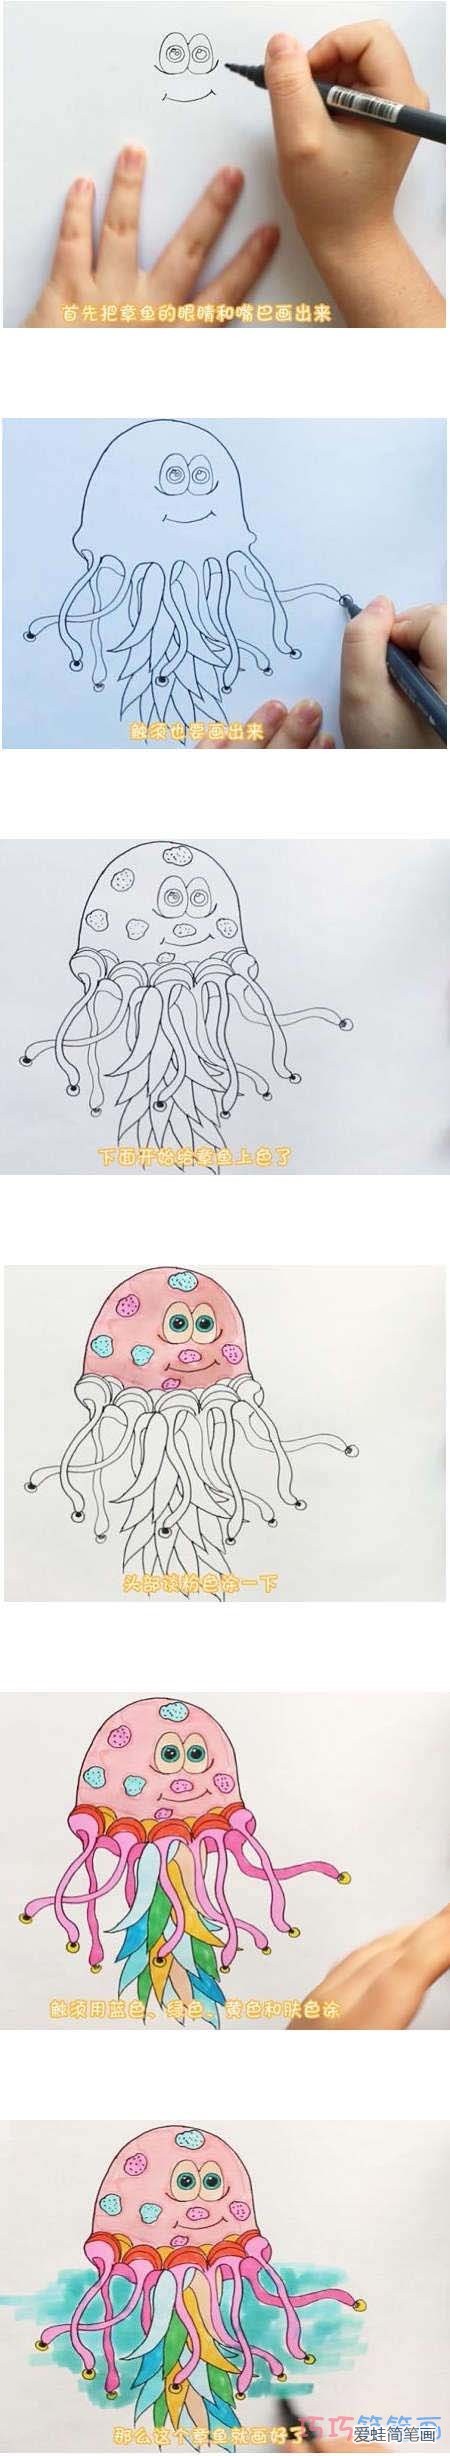 教你一步一步绘画彩色章鱼简笔画